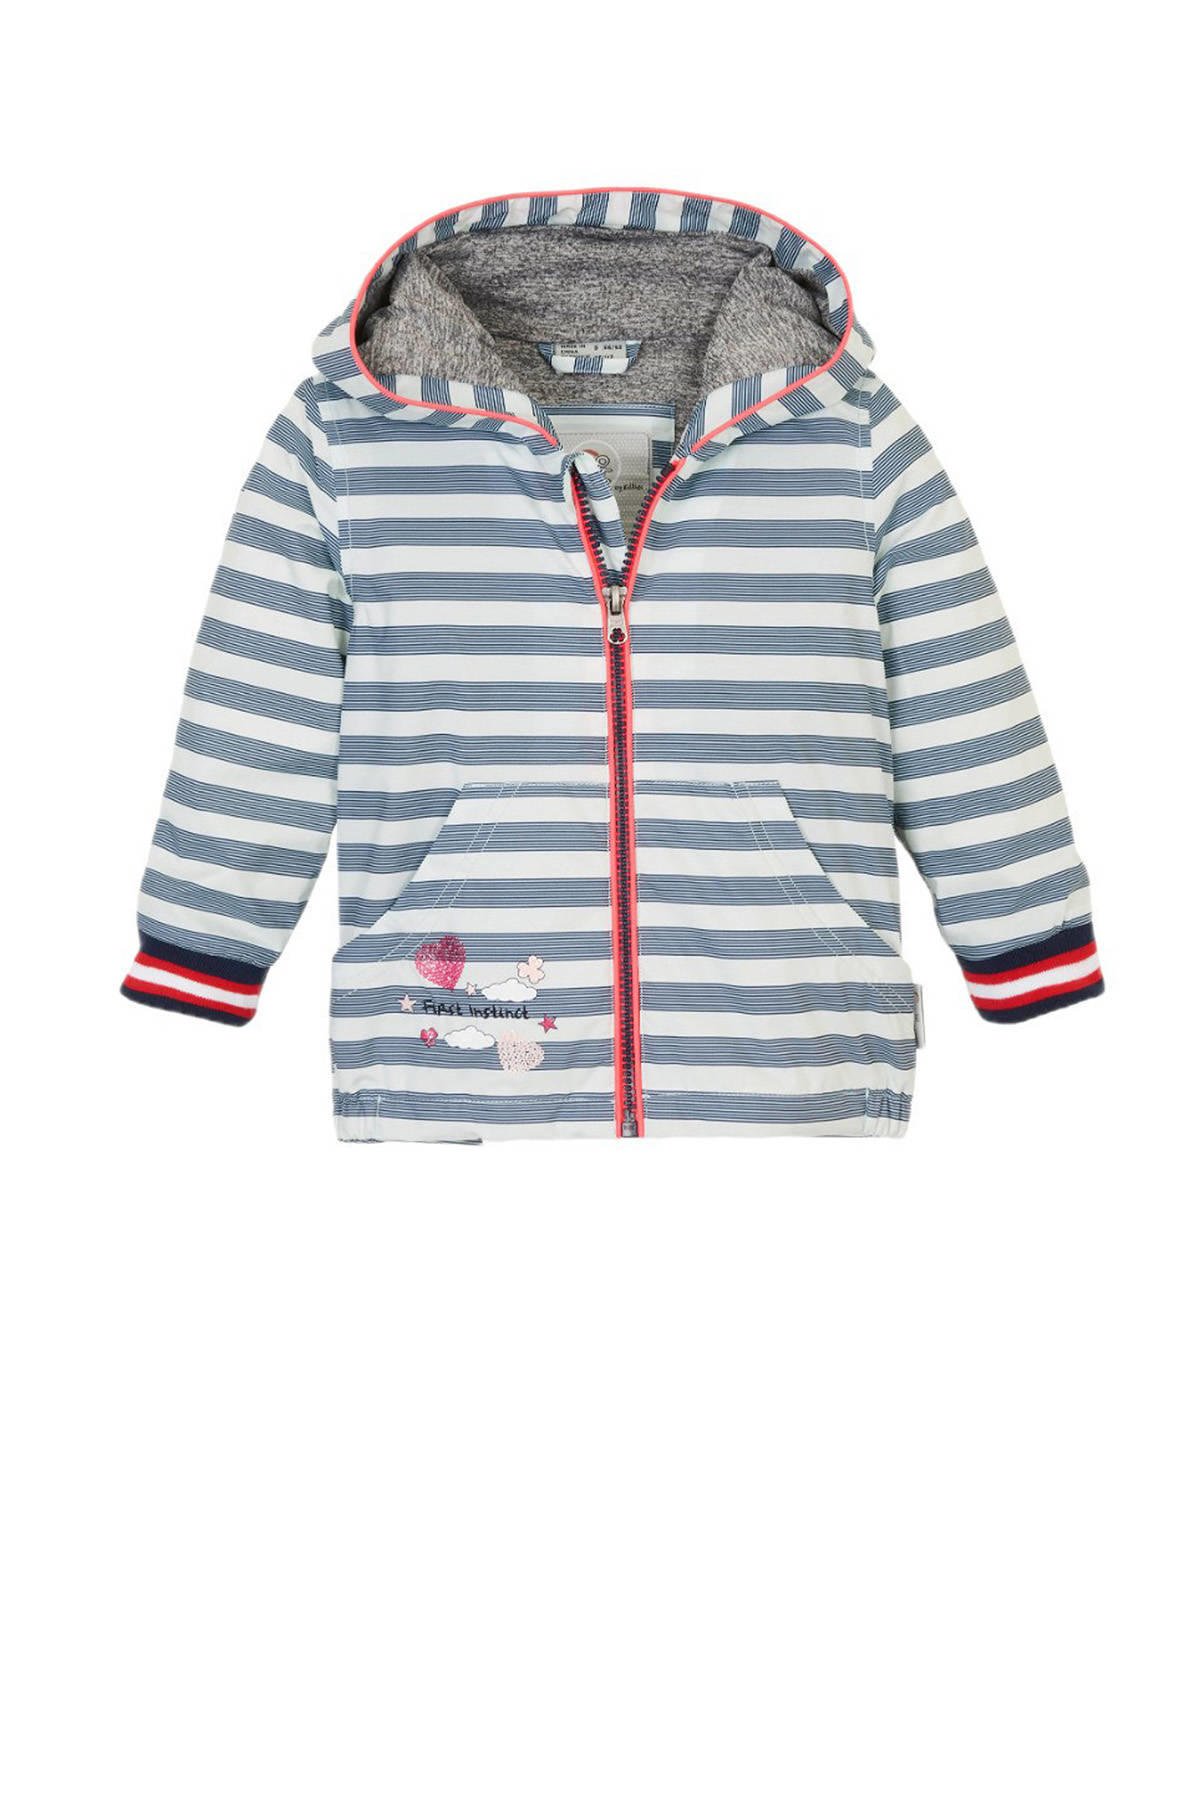 Vermaken Appartement Wortel First Instinct kids outdoor jas wit/lichtblauw/rood | wehkamp